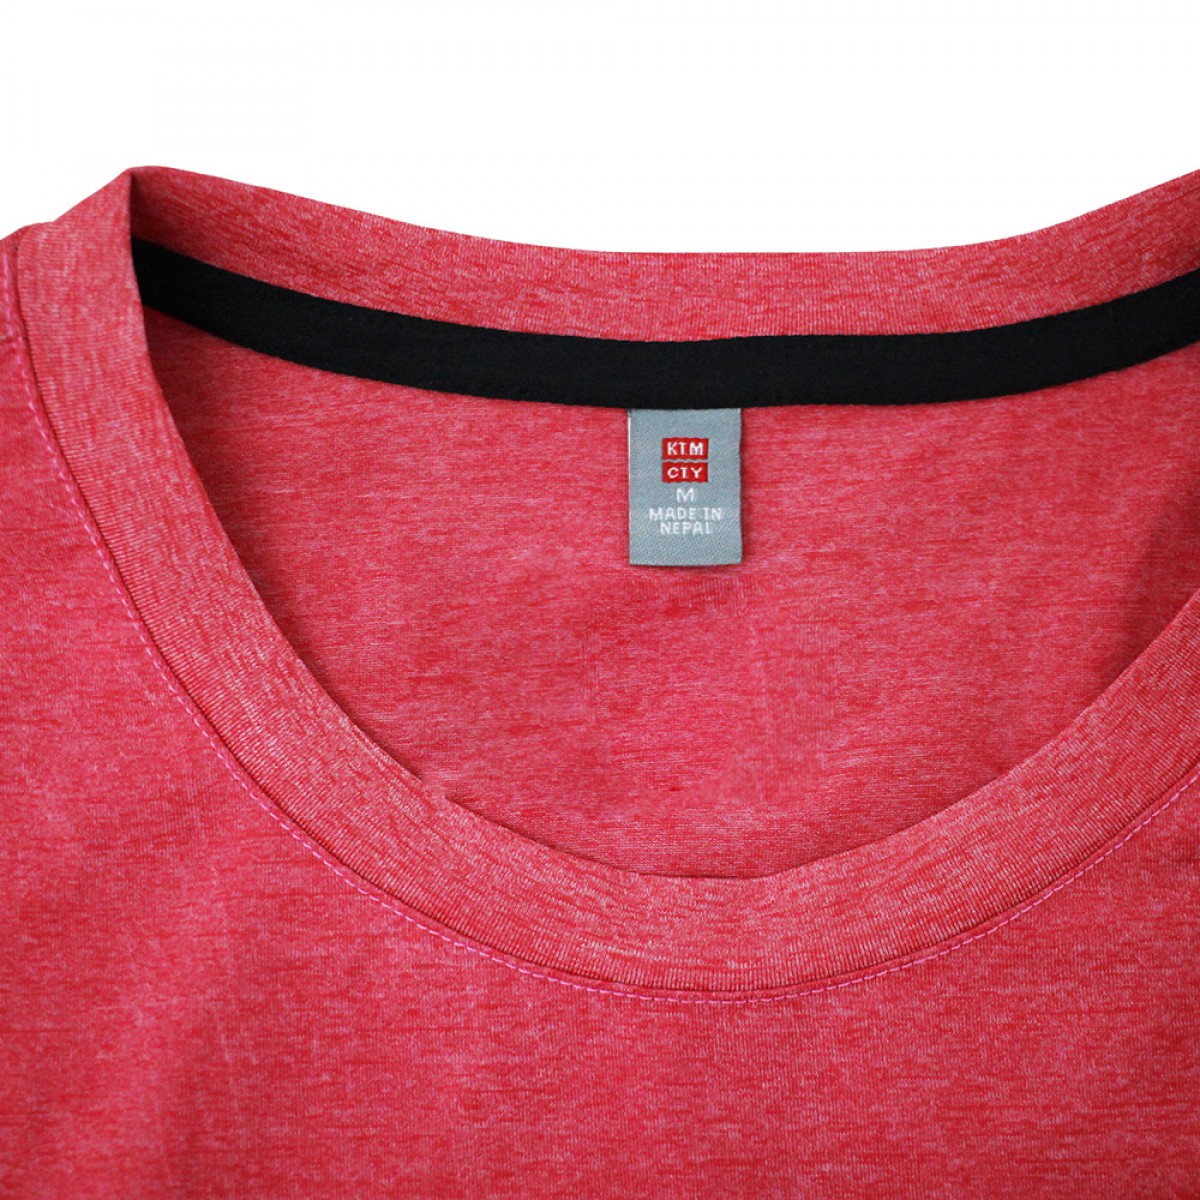 women-knit-round-neck-t-shirt-kkrt16930-2a